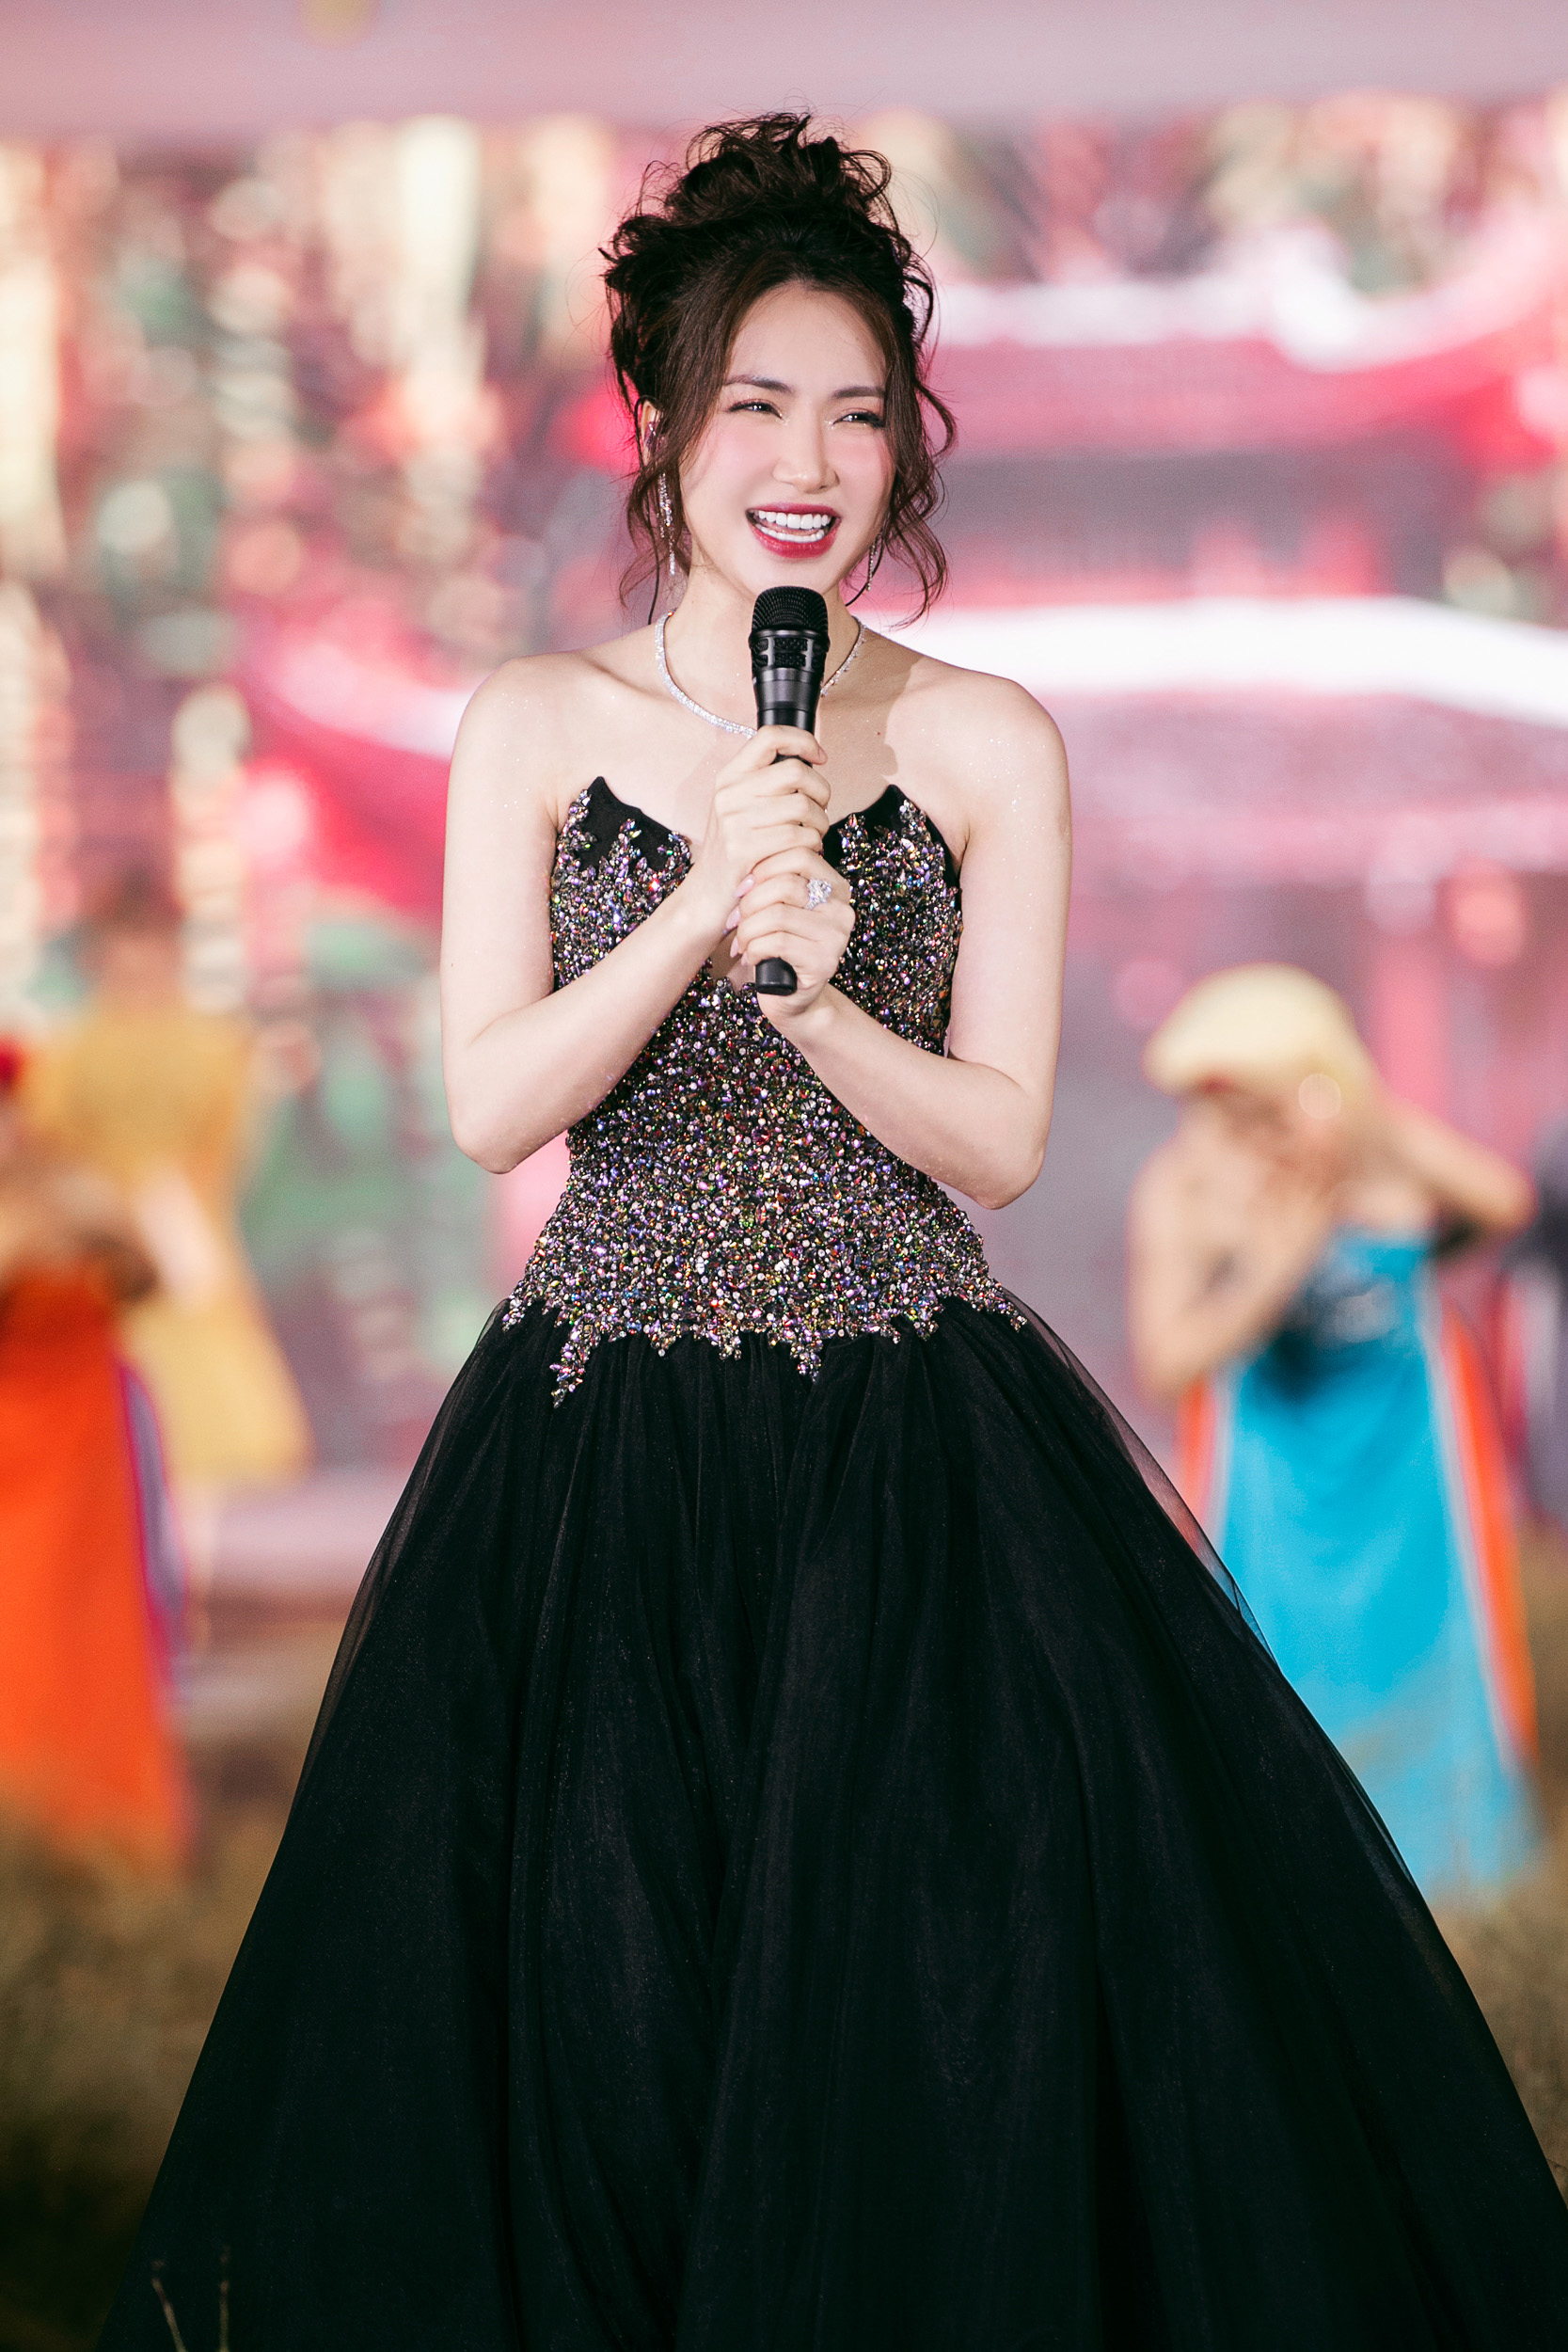 Hoa hậu Tiểu Vy nhan sắc ở tuổi 23 - Ảnh 6.